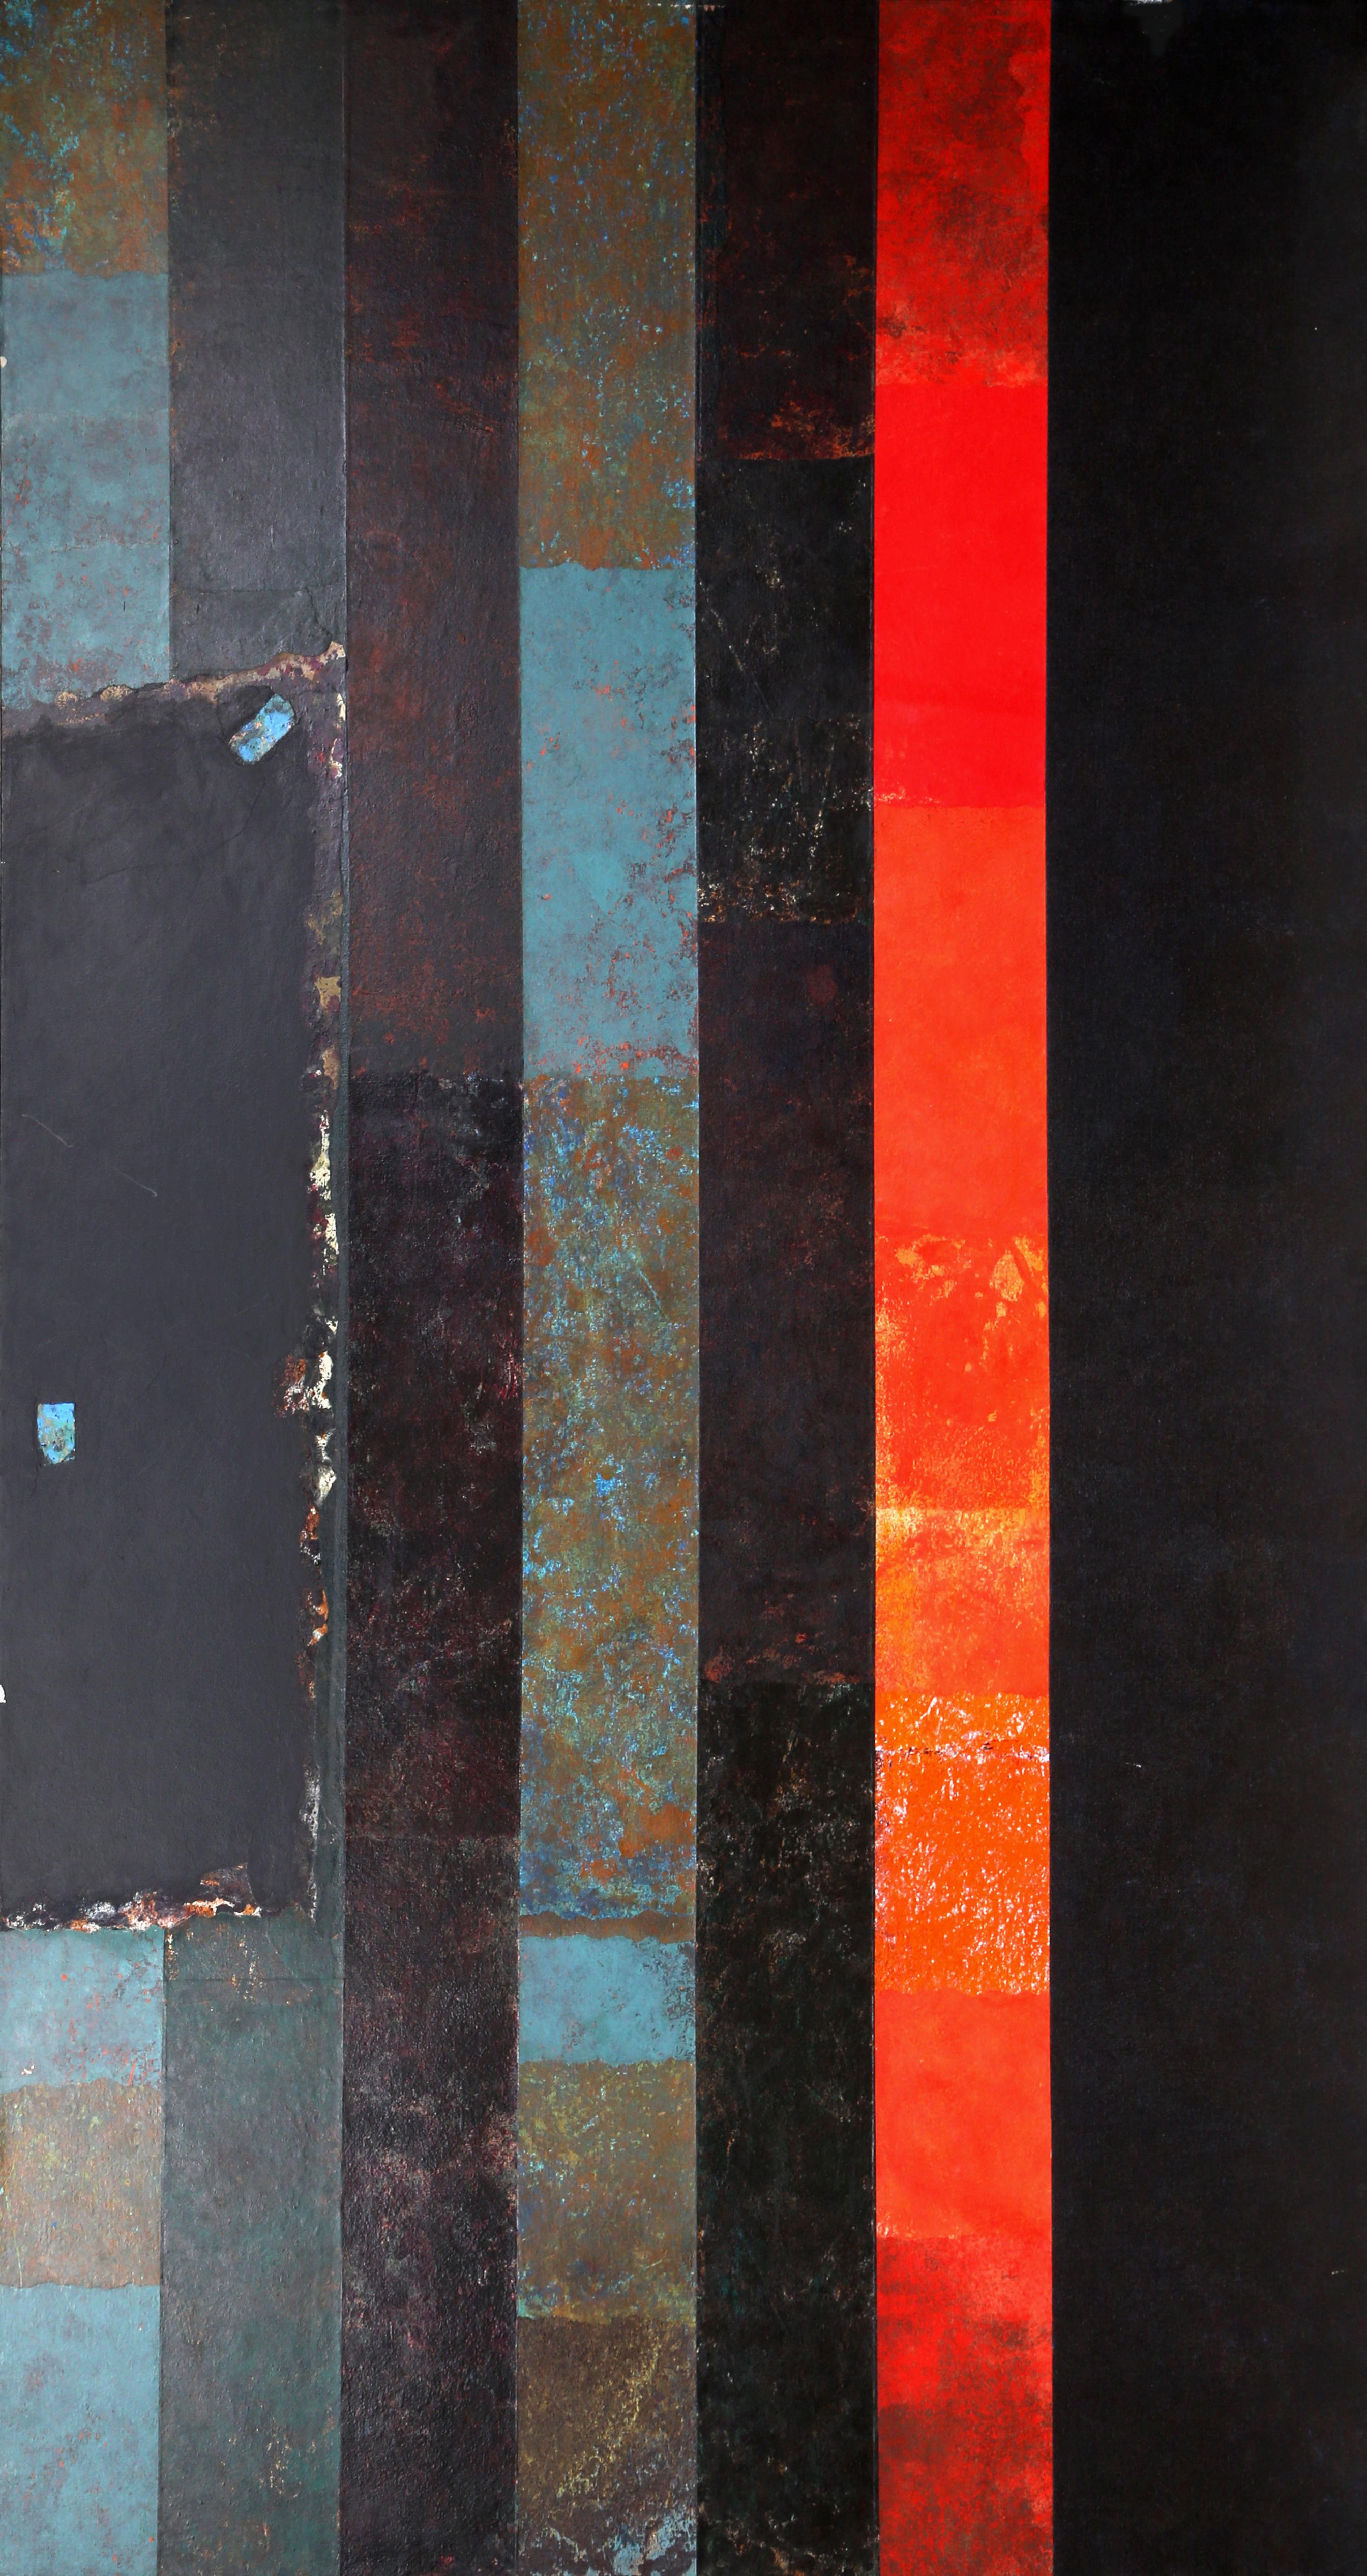 Artistics : Dan Teis
Titre : Rayures rouges et bleues sur fond noir
Date : vers 1977
Acrylique sur toile (non signé)
Taille : 72 x 40 in. (182.88 x 101.6 cm)